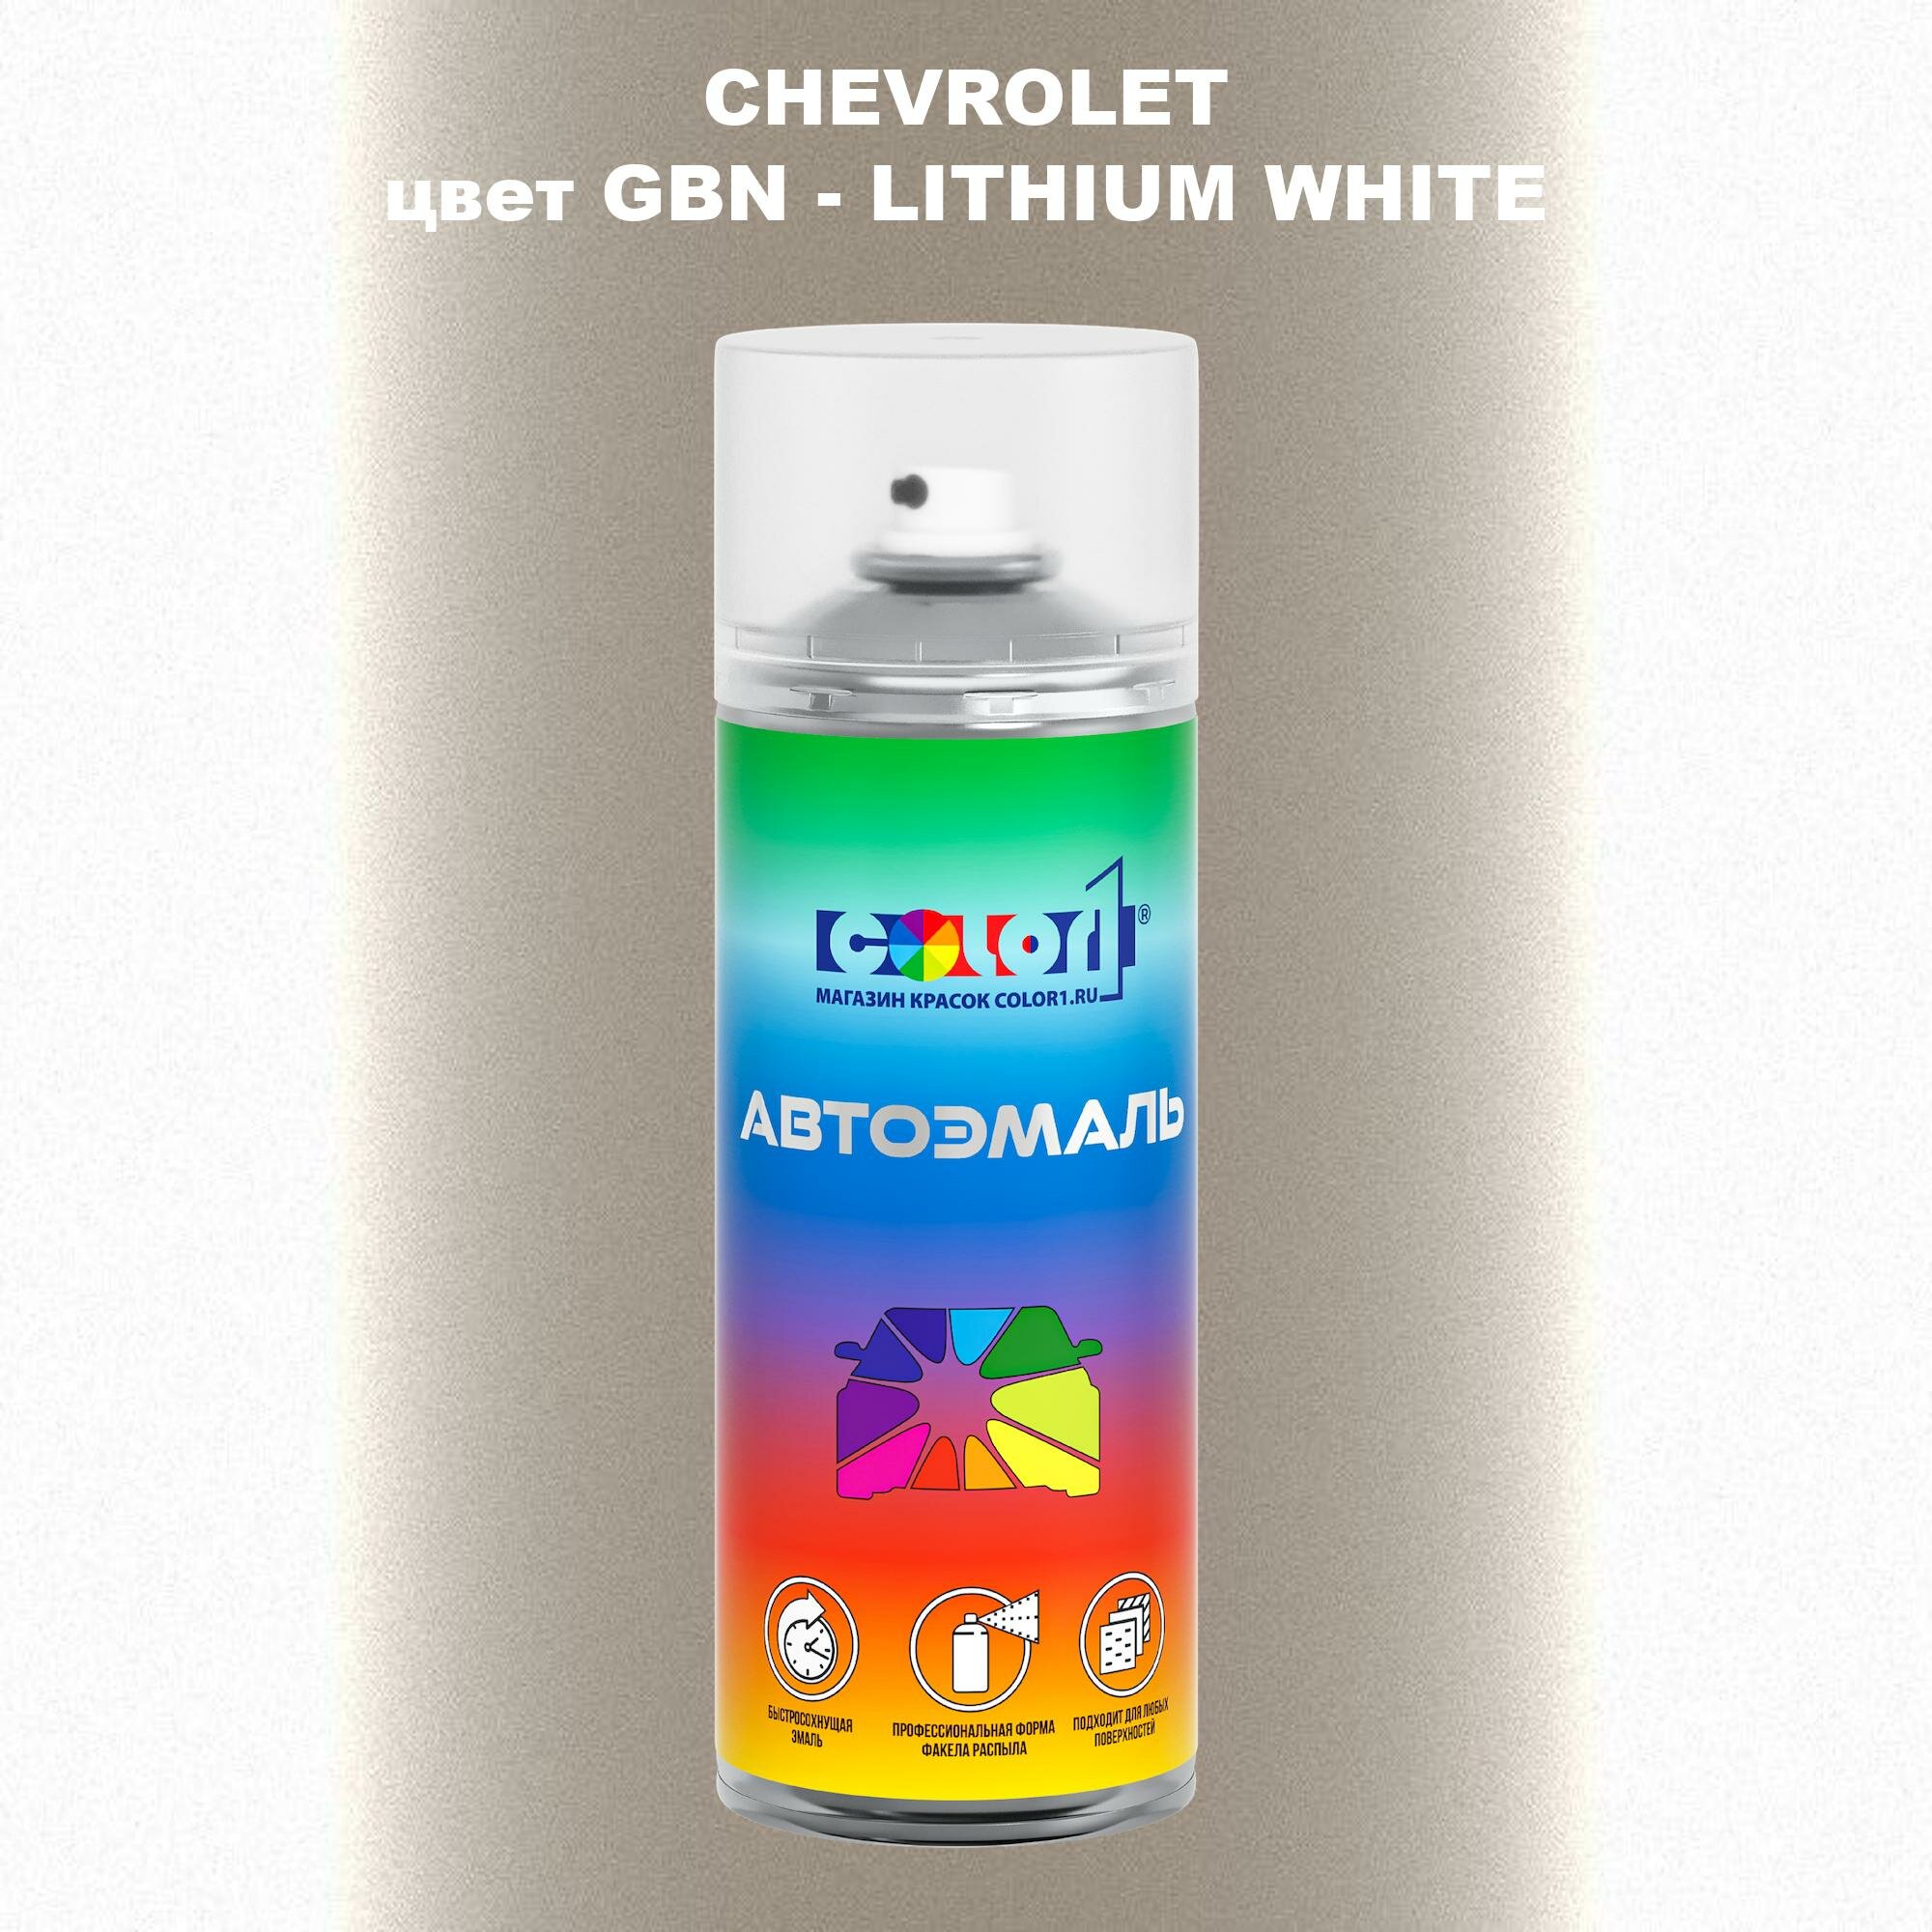 Аэрозольная краска COLOR1 для CHEVROLET, цвет GBN - LITHIUM WHITE